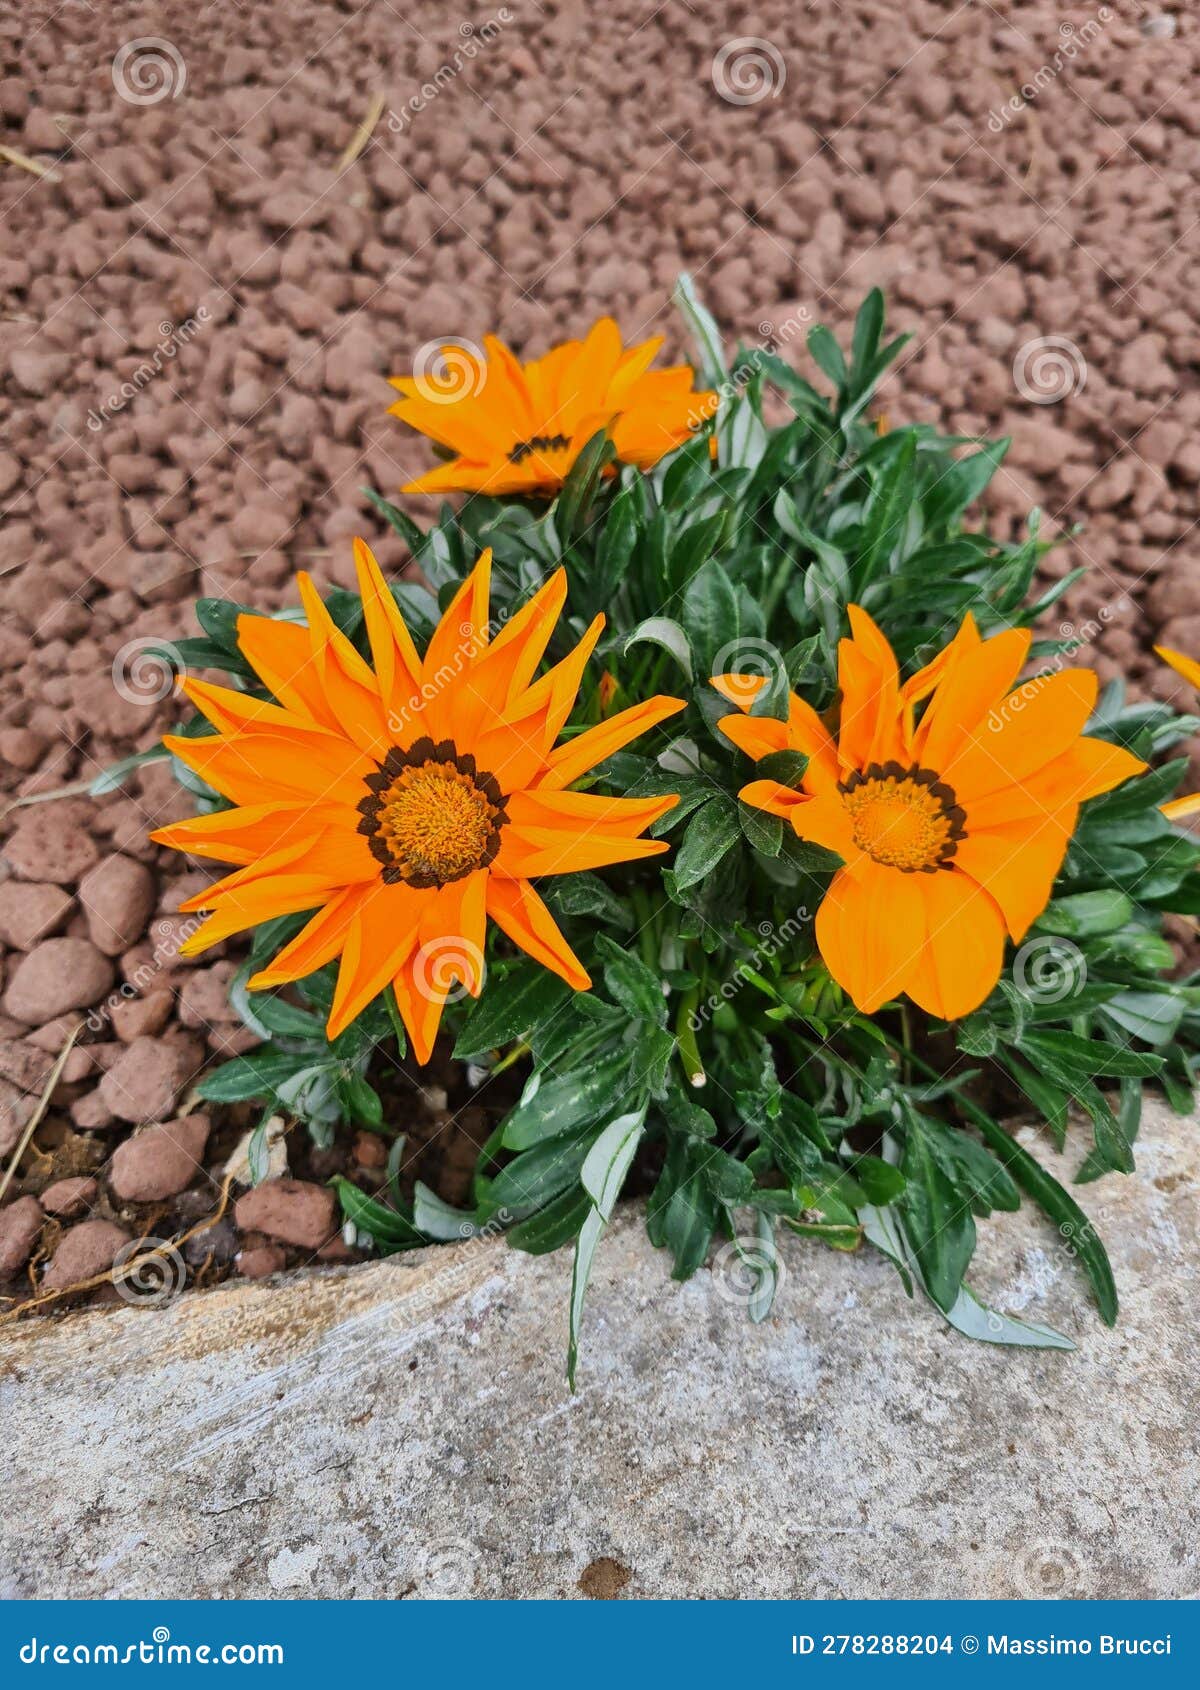 fiore arancione conosciuto come gazania strisciante o gazania (gazania rigens)